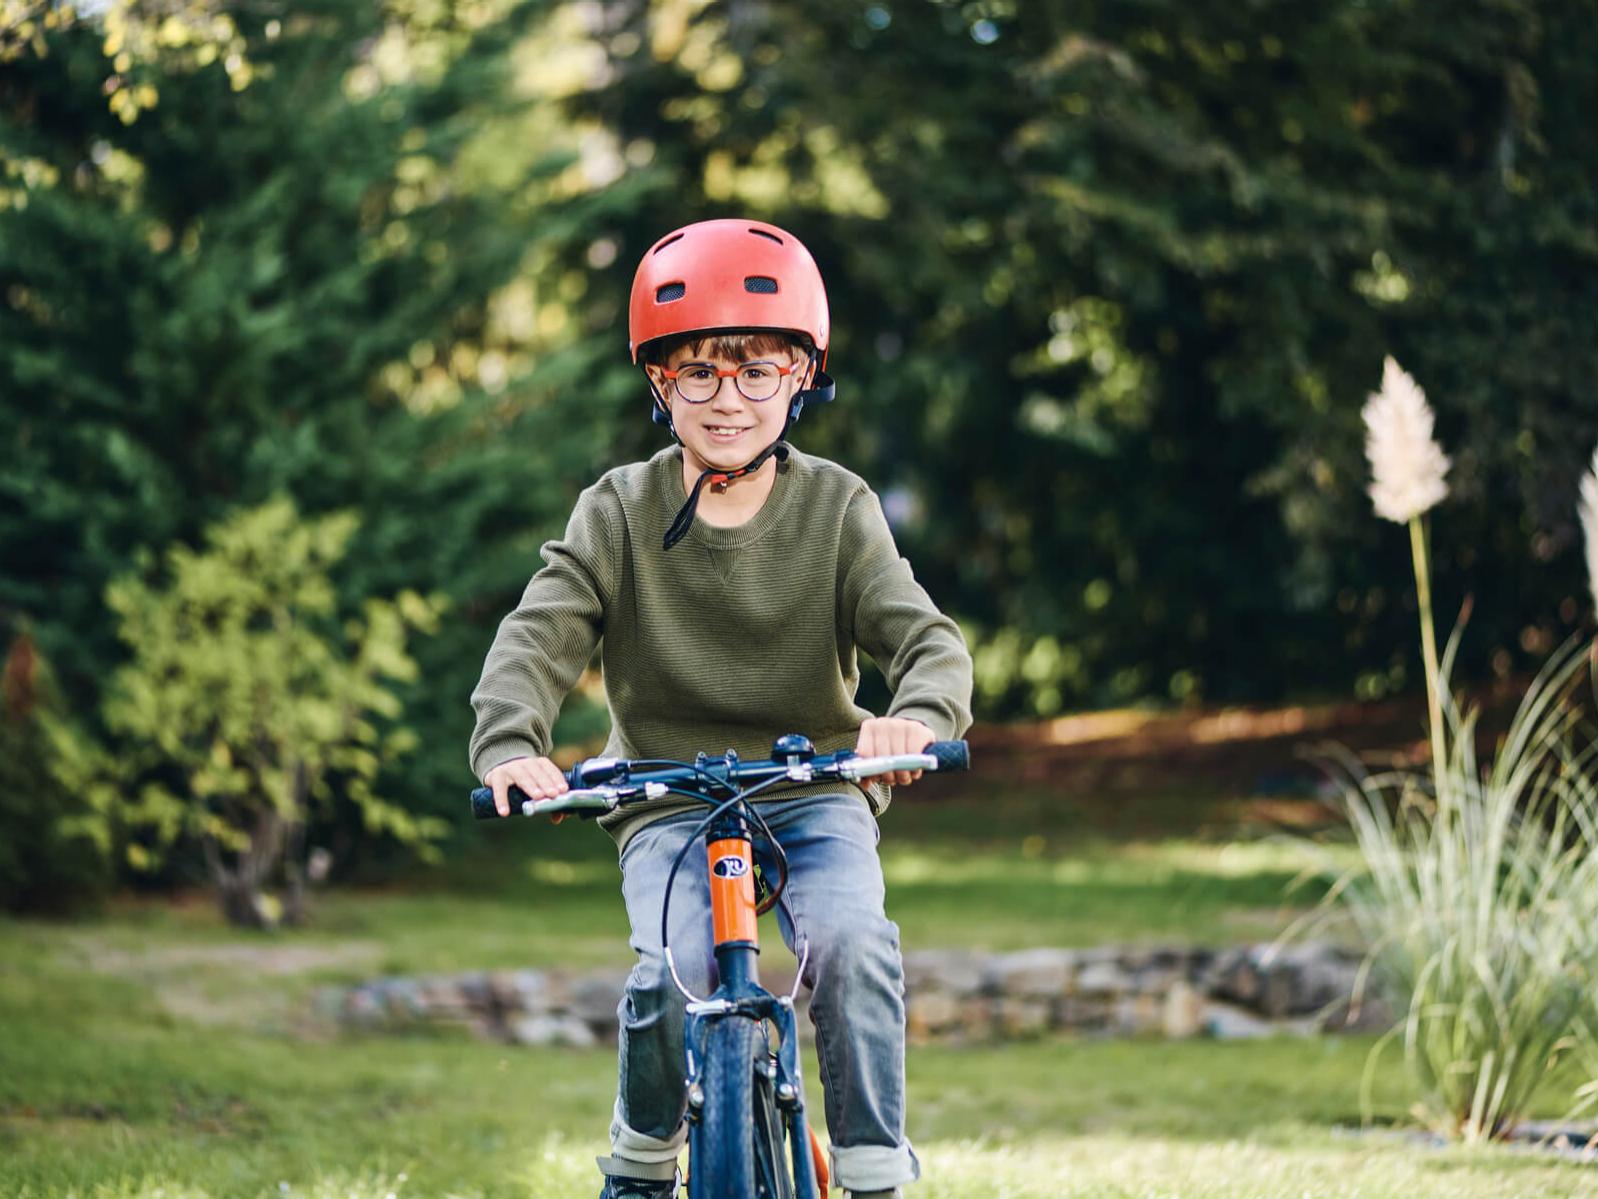 자이스 근시 관리 렌즈를 착용한 어린 소년이 야외에서 자전거를 타고 있다.